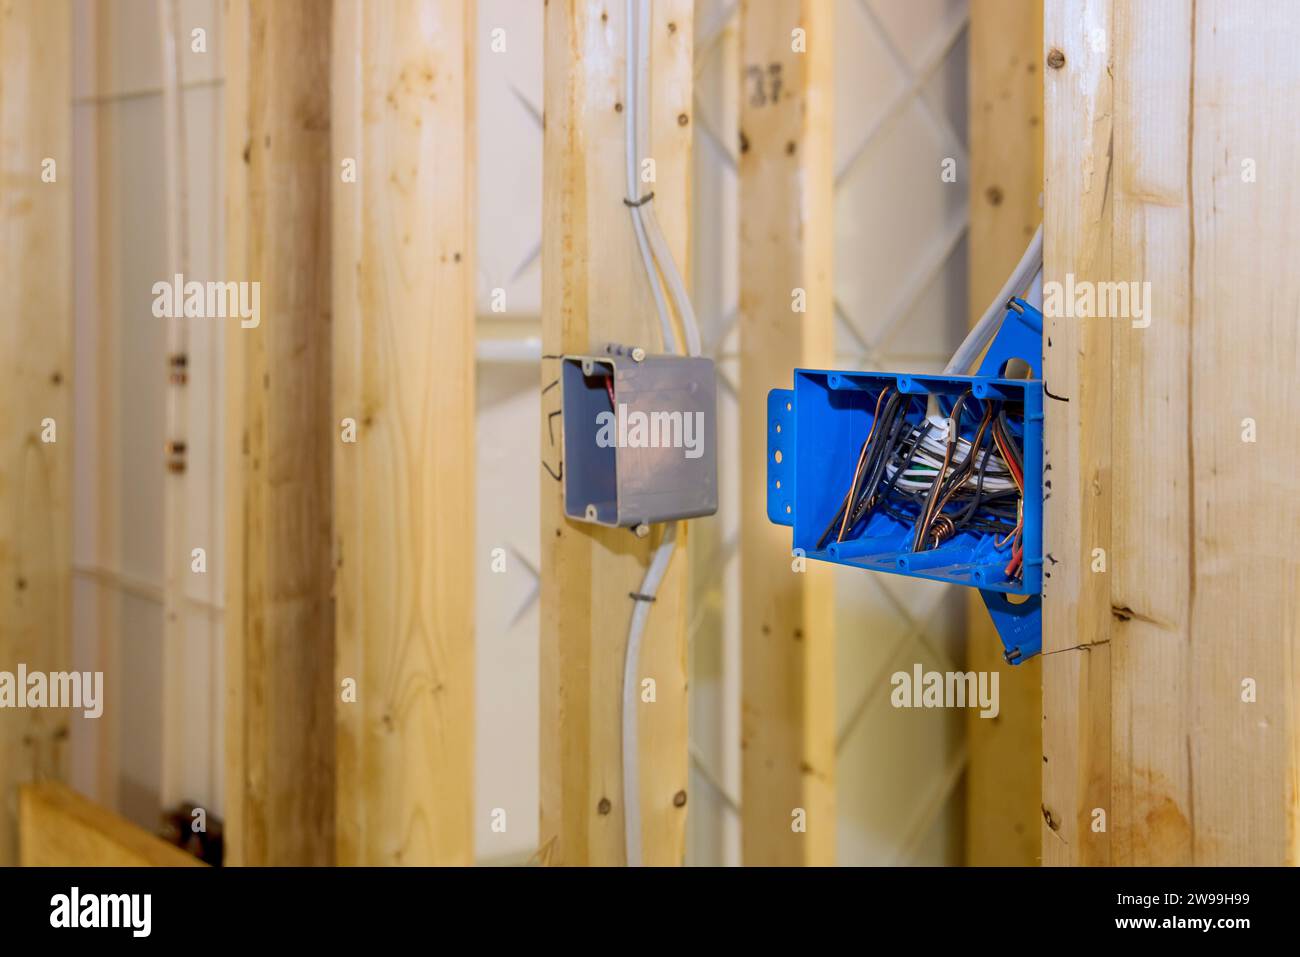 Situé sur le mur au-dessus de la poutre de cadre en bois est un boîtier de commutation électrique en plastique avec des fils Banque D'Images